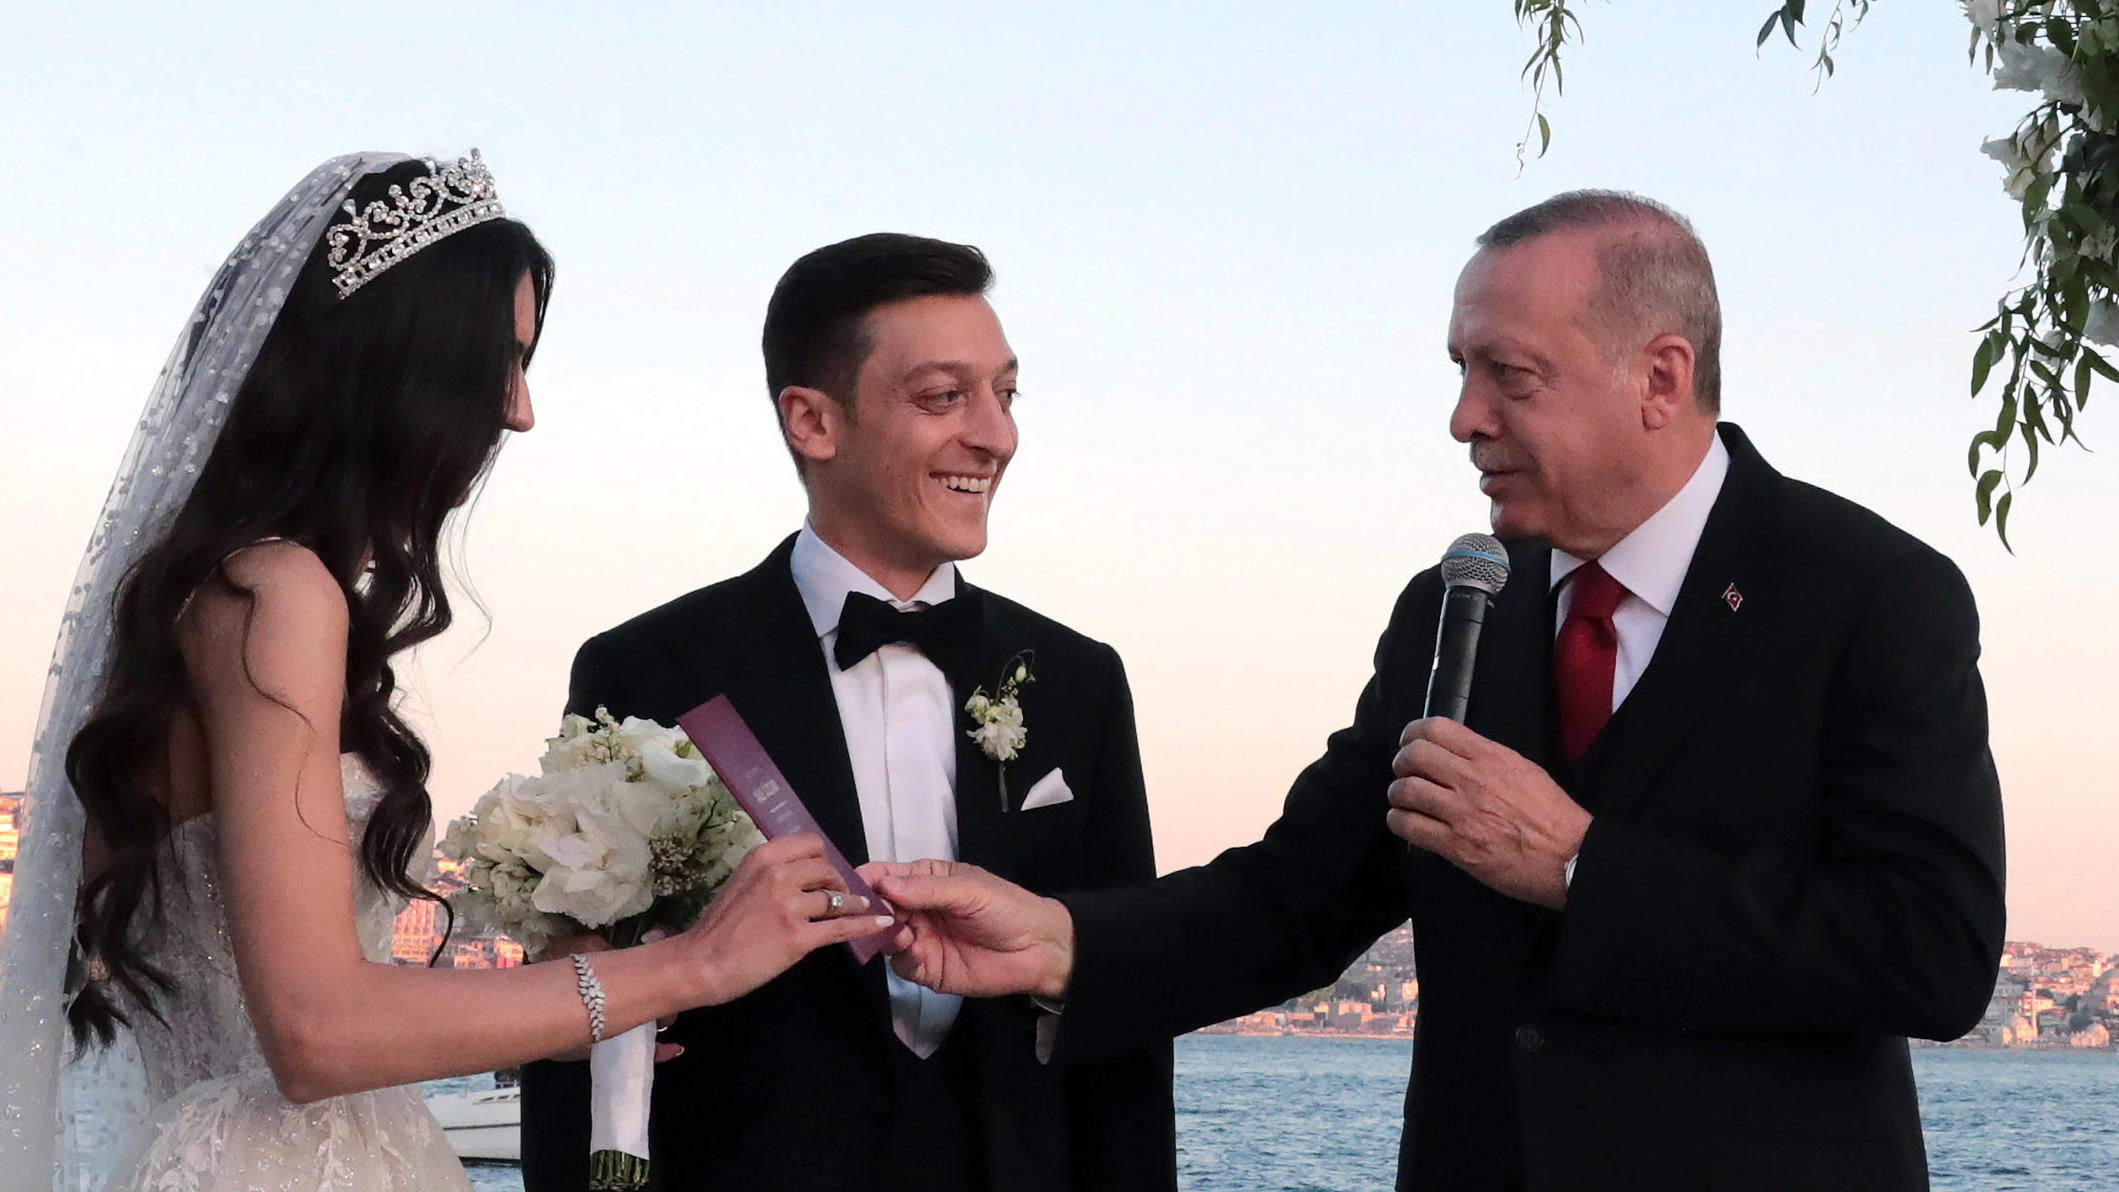 HANDOUT - 07.06.2019, Türkei, Istanbul: Recep Tayyip Erdogan (2.v.r), Präsident der Türkei, spricht auf der Hochzeit von Fußballer Mesut Özil (2.v.l) und seiner Ehefrau, der Schauspielerin Amine Gülse (l), Erdogans Ehefrau Emine (r) applaudiert. Foto